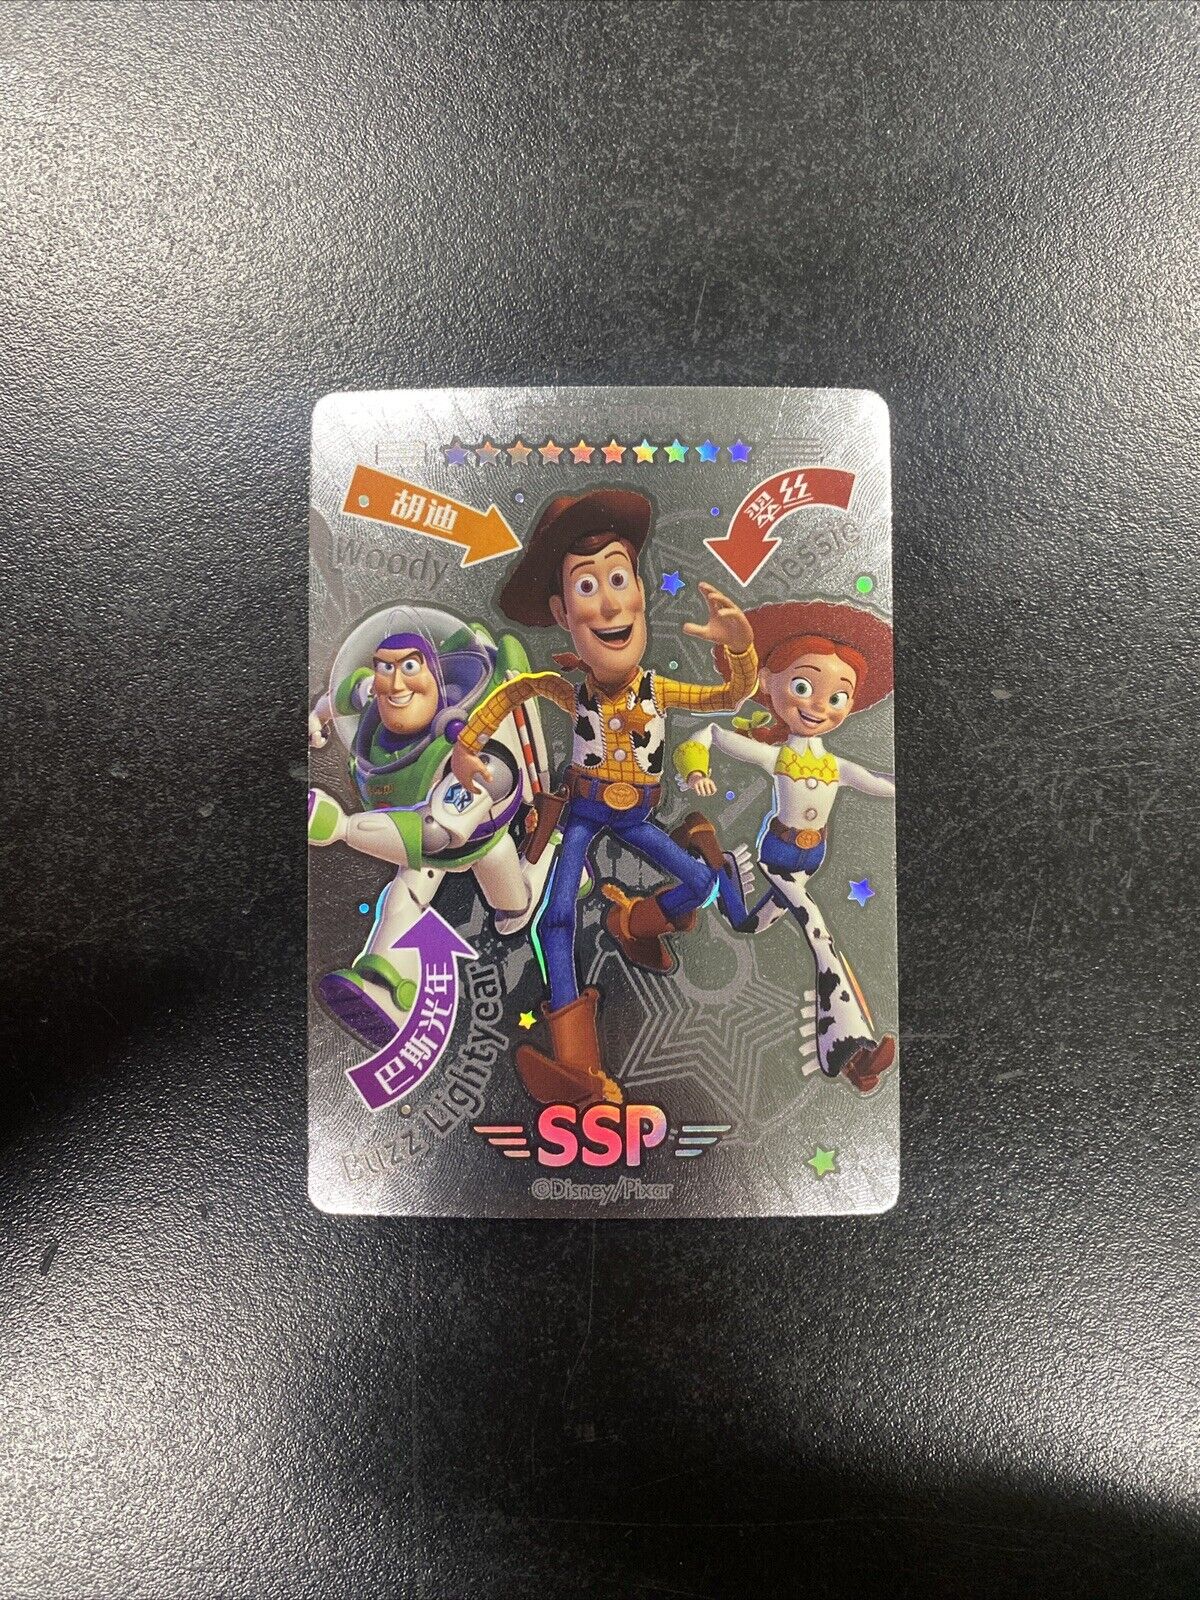 Card Fun Disney Pixar Silver SSP Toy Story Woody Buzz Jessie RARE new DISC01SSP8